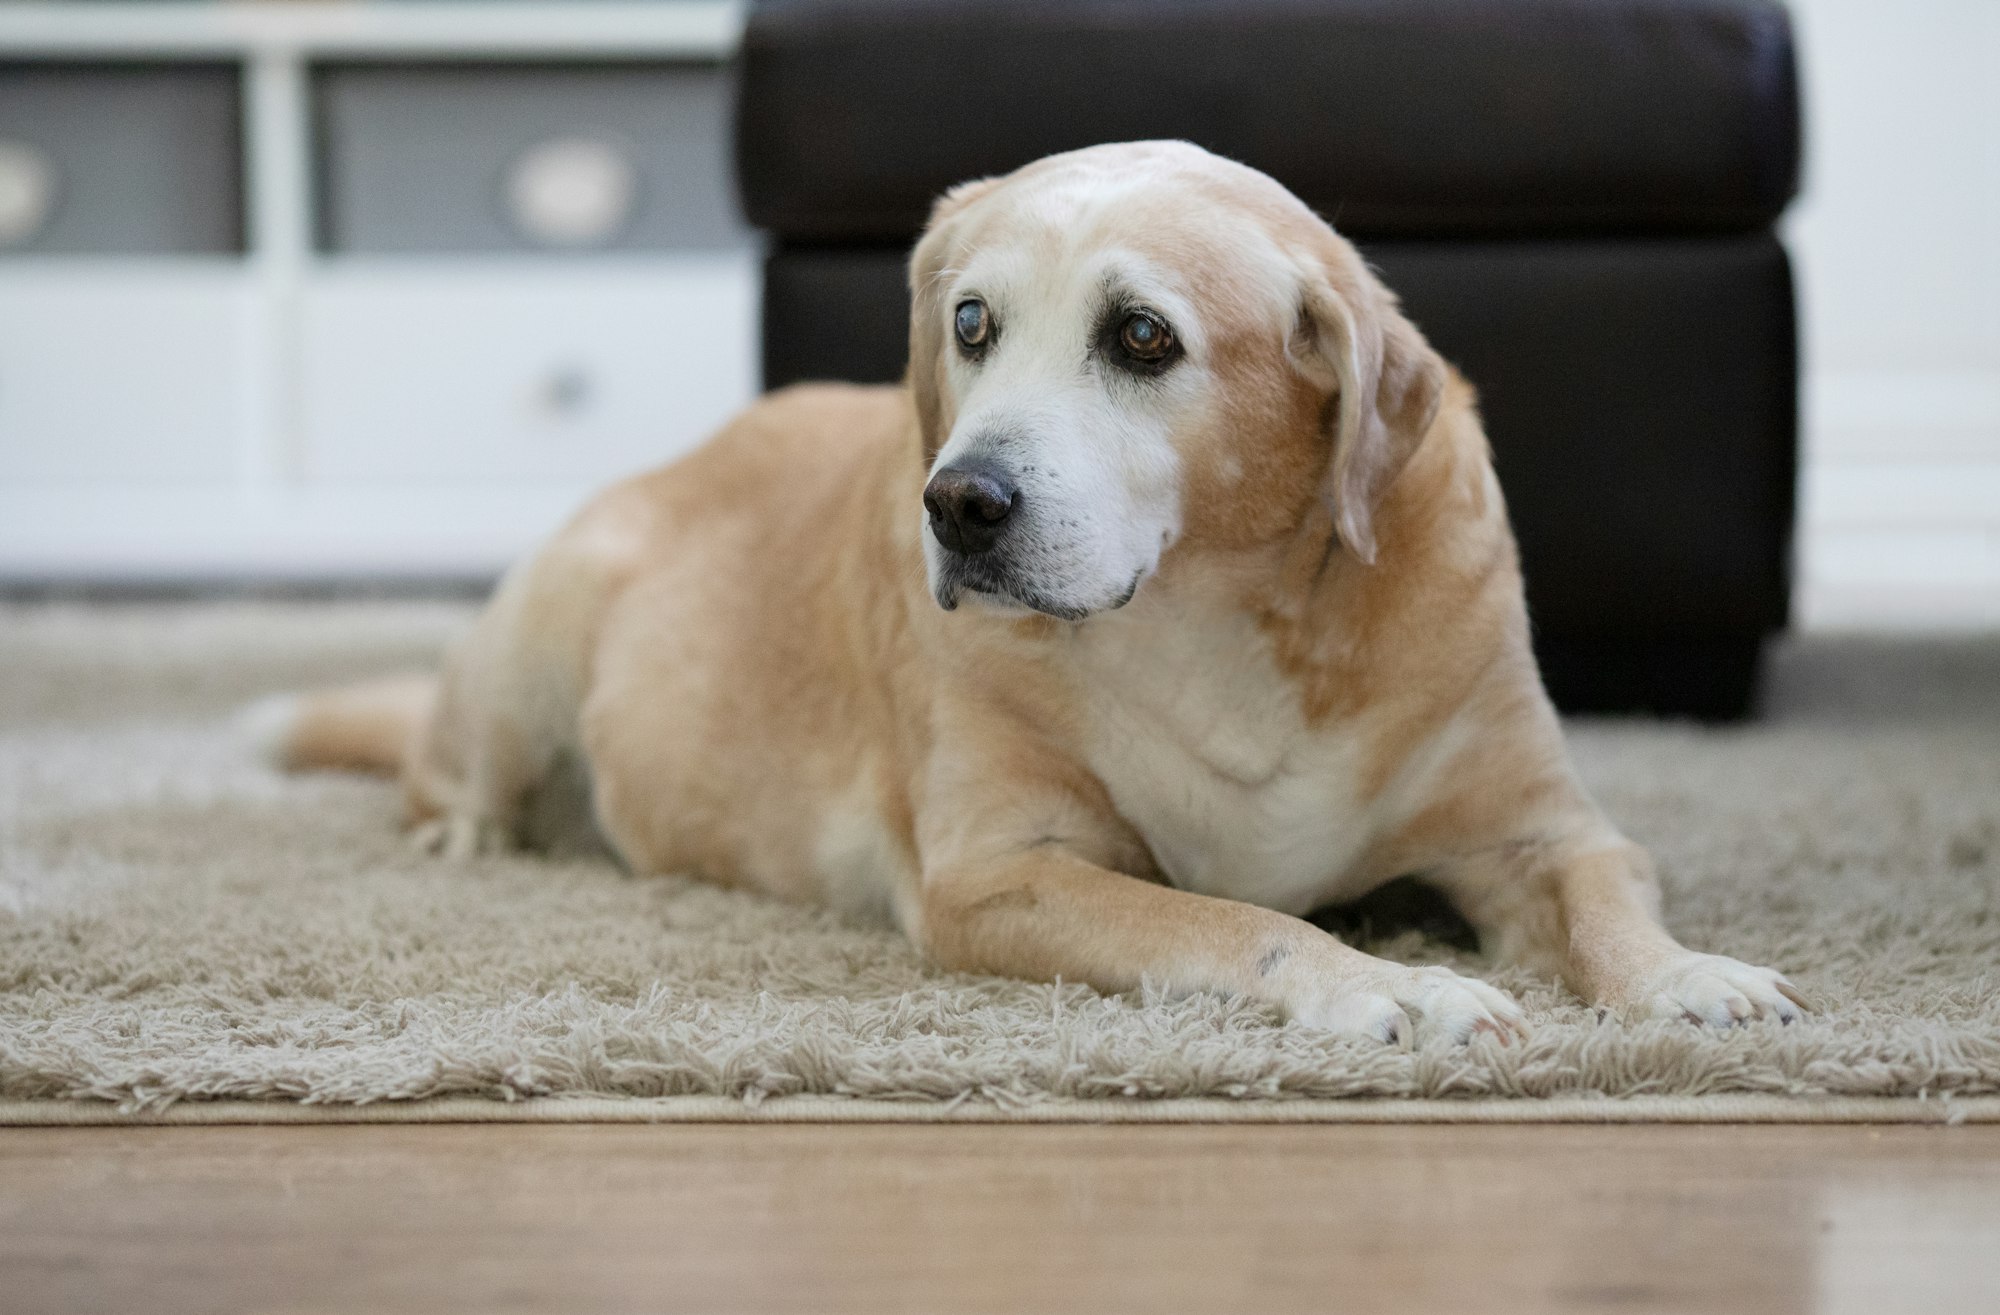 A senior labrador dog sitting in a brightly lit home